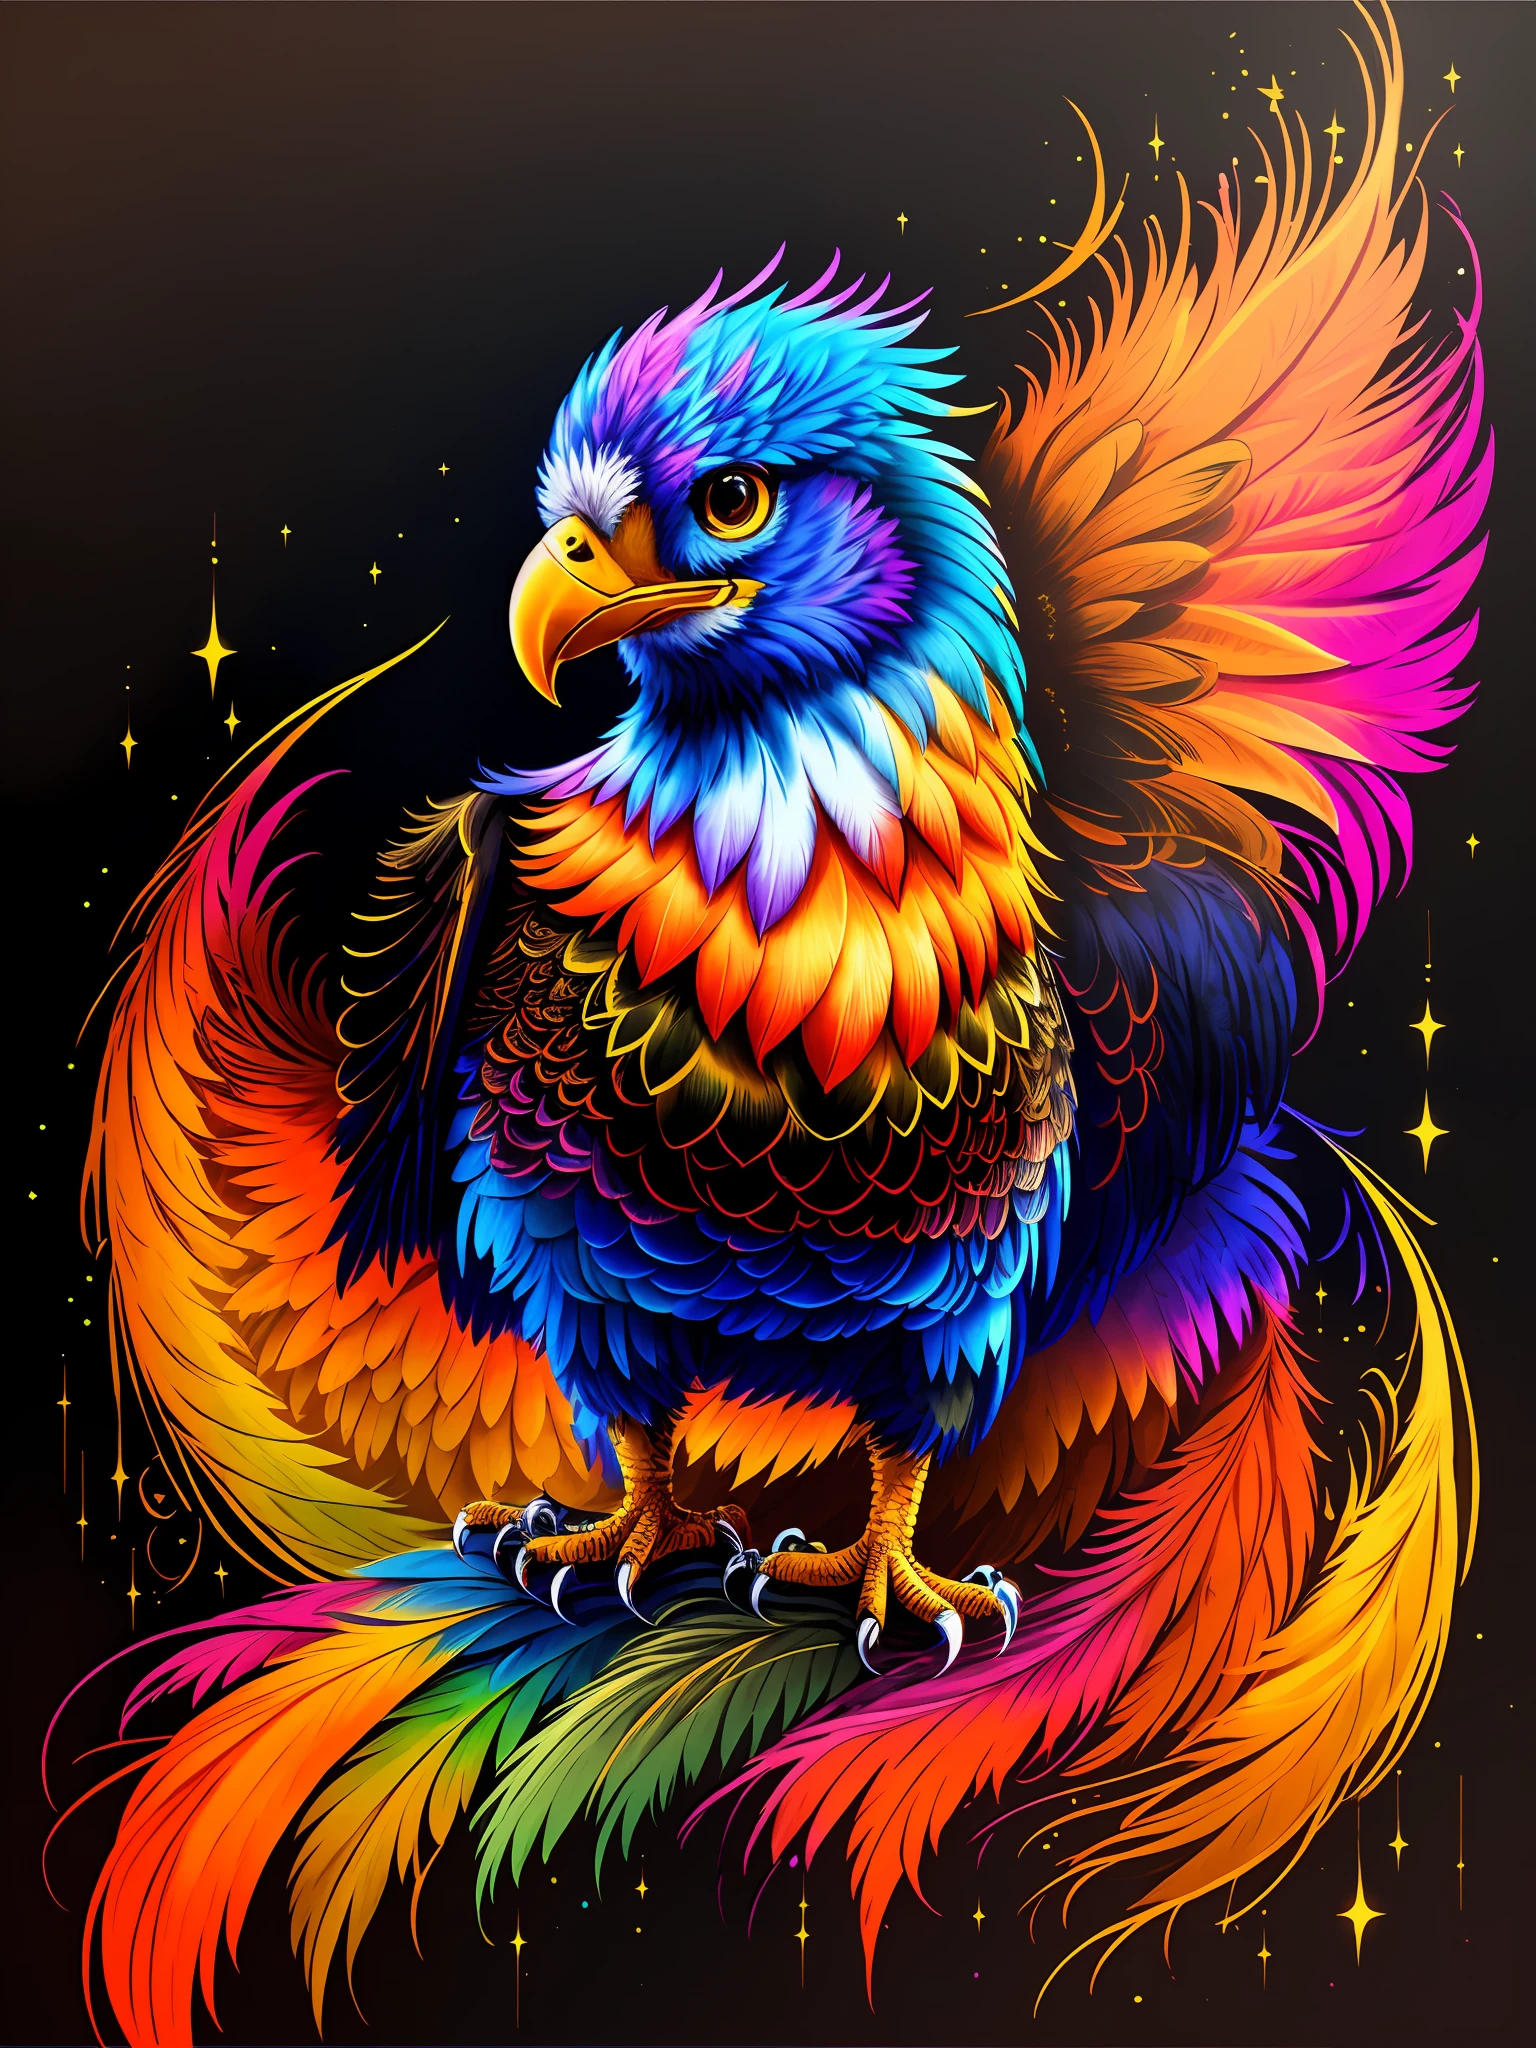 背景中有一顆星星的色彩鮮豔的鳥, 鳳凰的藝術作品, 多彩的羽毛, 發光的羽毛, 充滿色彩和豐富的細節, 蜮, 火鳥, 高度複雜且豐富多彩, &#39;&#39;鳳凰壁紙, 创辉数字幻想艺术, 色彩缤纷, 充滿活力的高對比色彩, 強烈而充滿活力的色彩, 闪亮的彩虹羽毛, 高細節顏色 --auto --s2